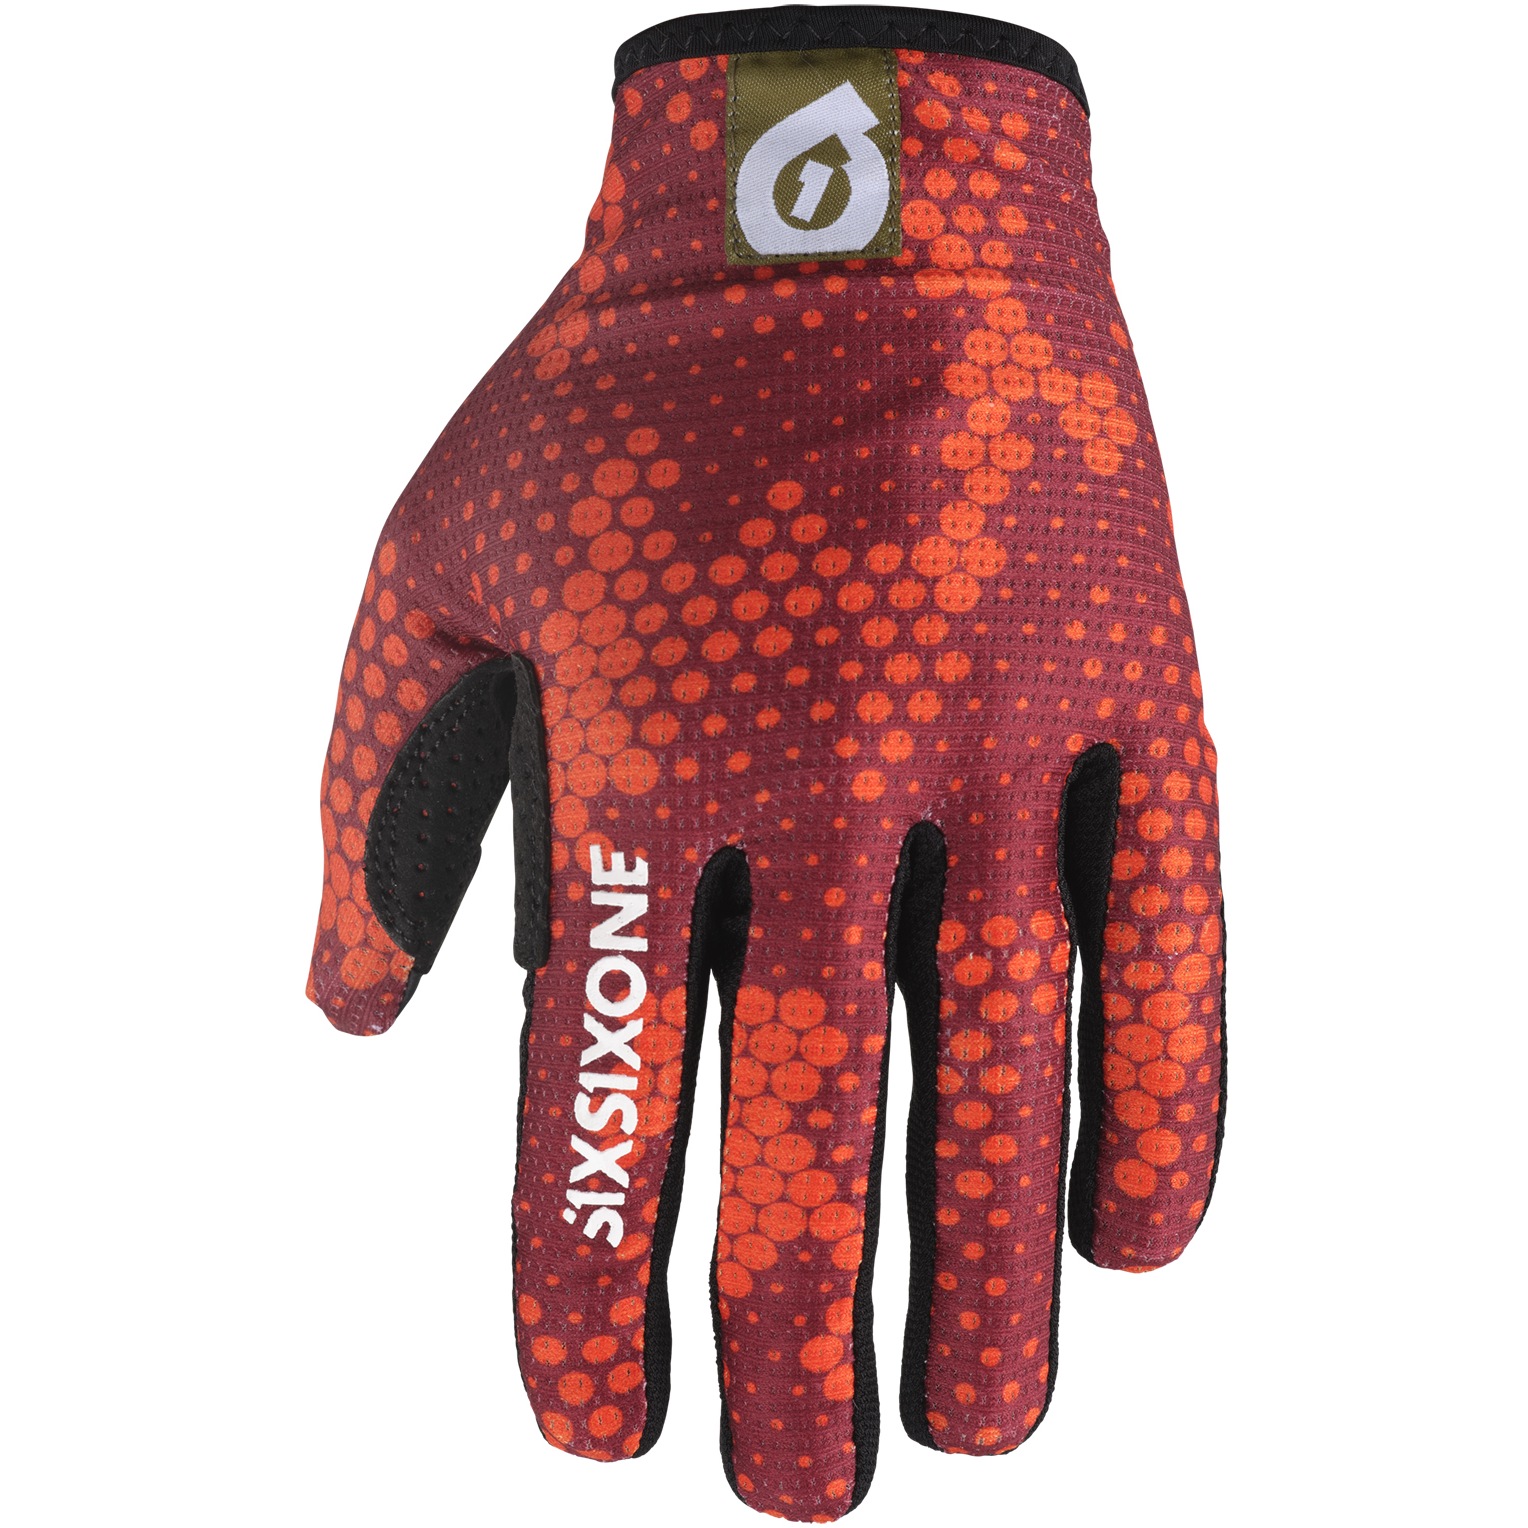 Productfoto van SIXSIXONE Comp Handschoenen - Digi Orange